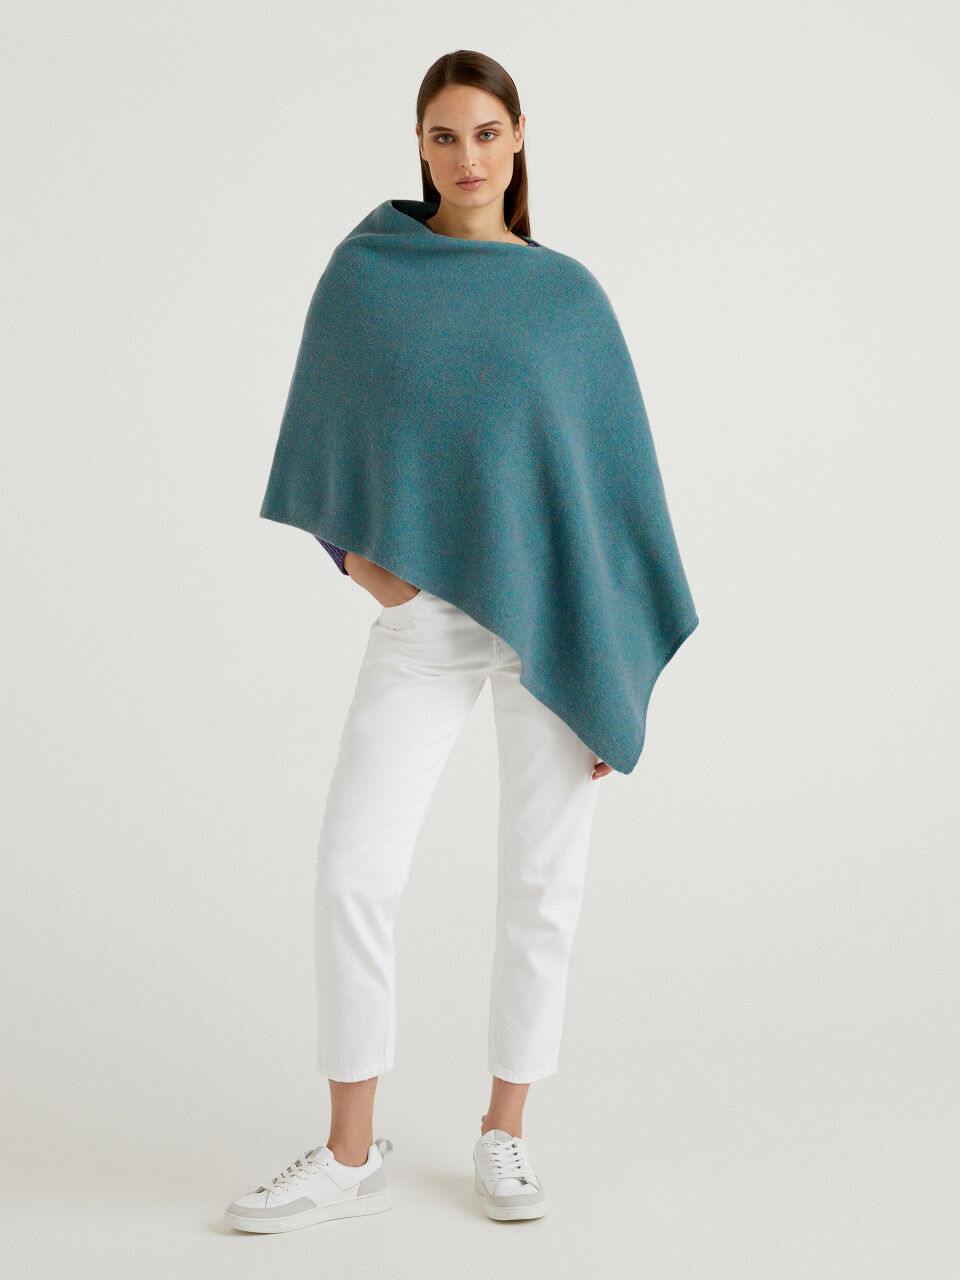 Mantella in lana e cashmereFendi in Lana di colore Neutro Donna Abbigliamento da Maglieria da Poncho e abiti modello poncho 